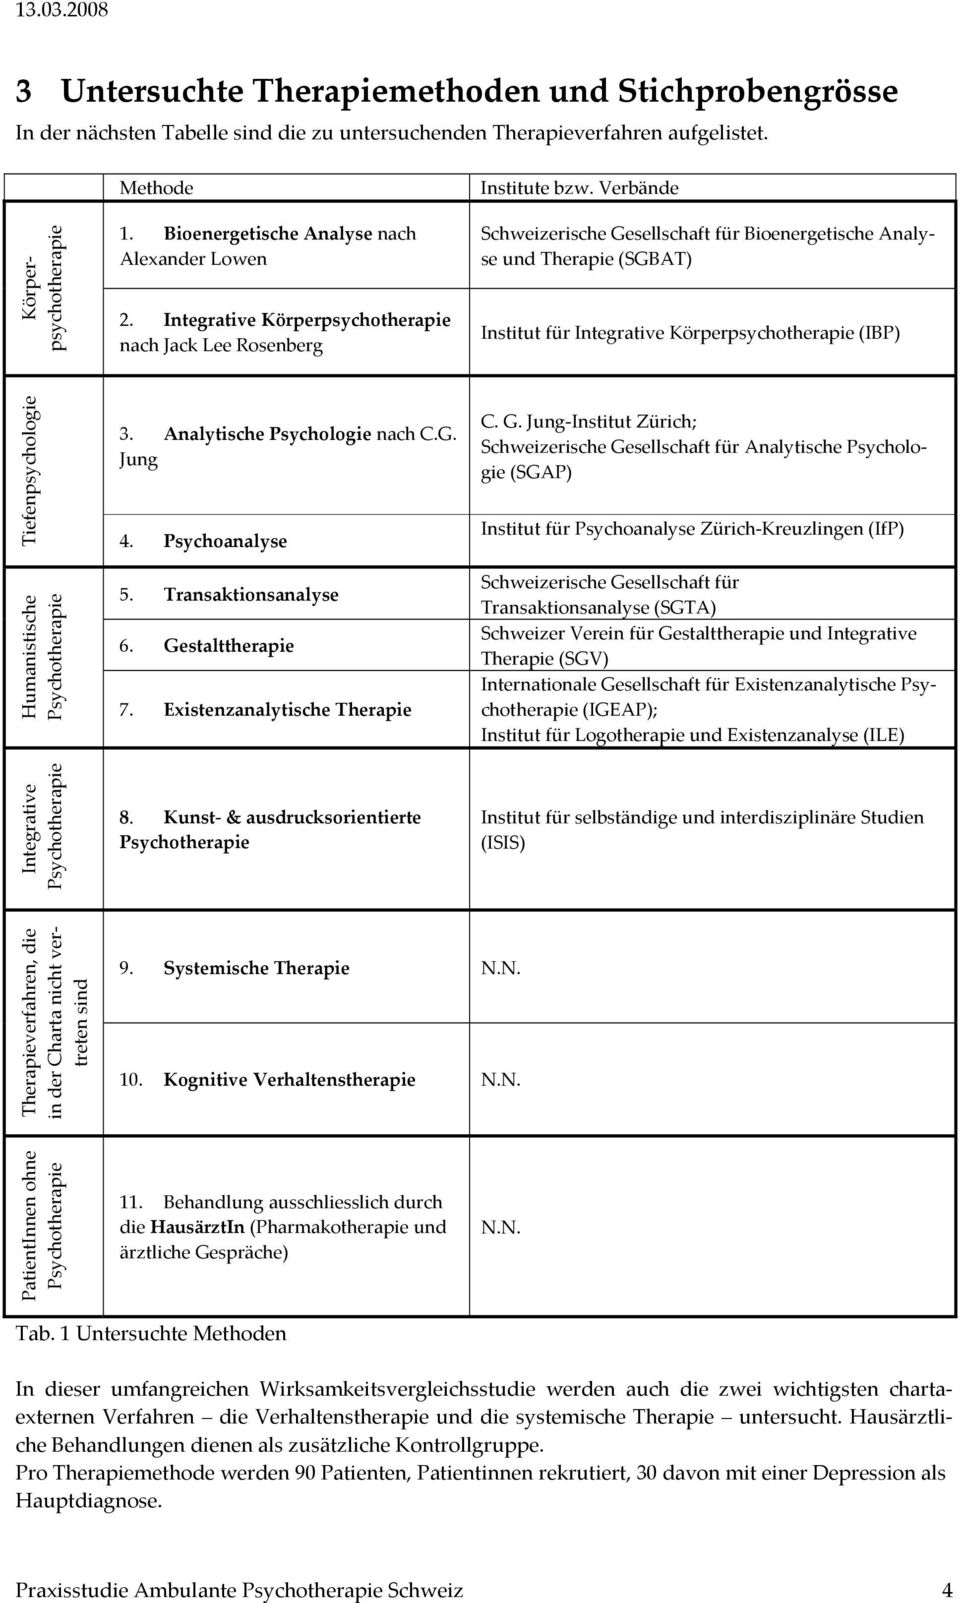 Verbände Schweizerische Gesellschaft für Bioenergetische Analyse und Therapie (SGBAT) Institut für Integrative Körperpsychotherapie (IBP) Tiefenpsychologie Humanistische Psychotherapie 3.